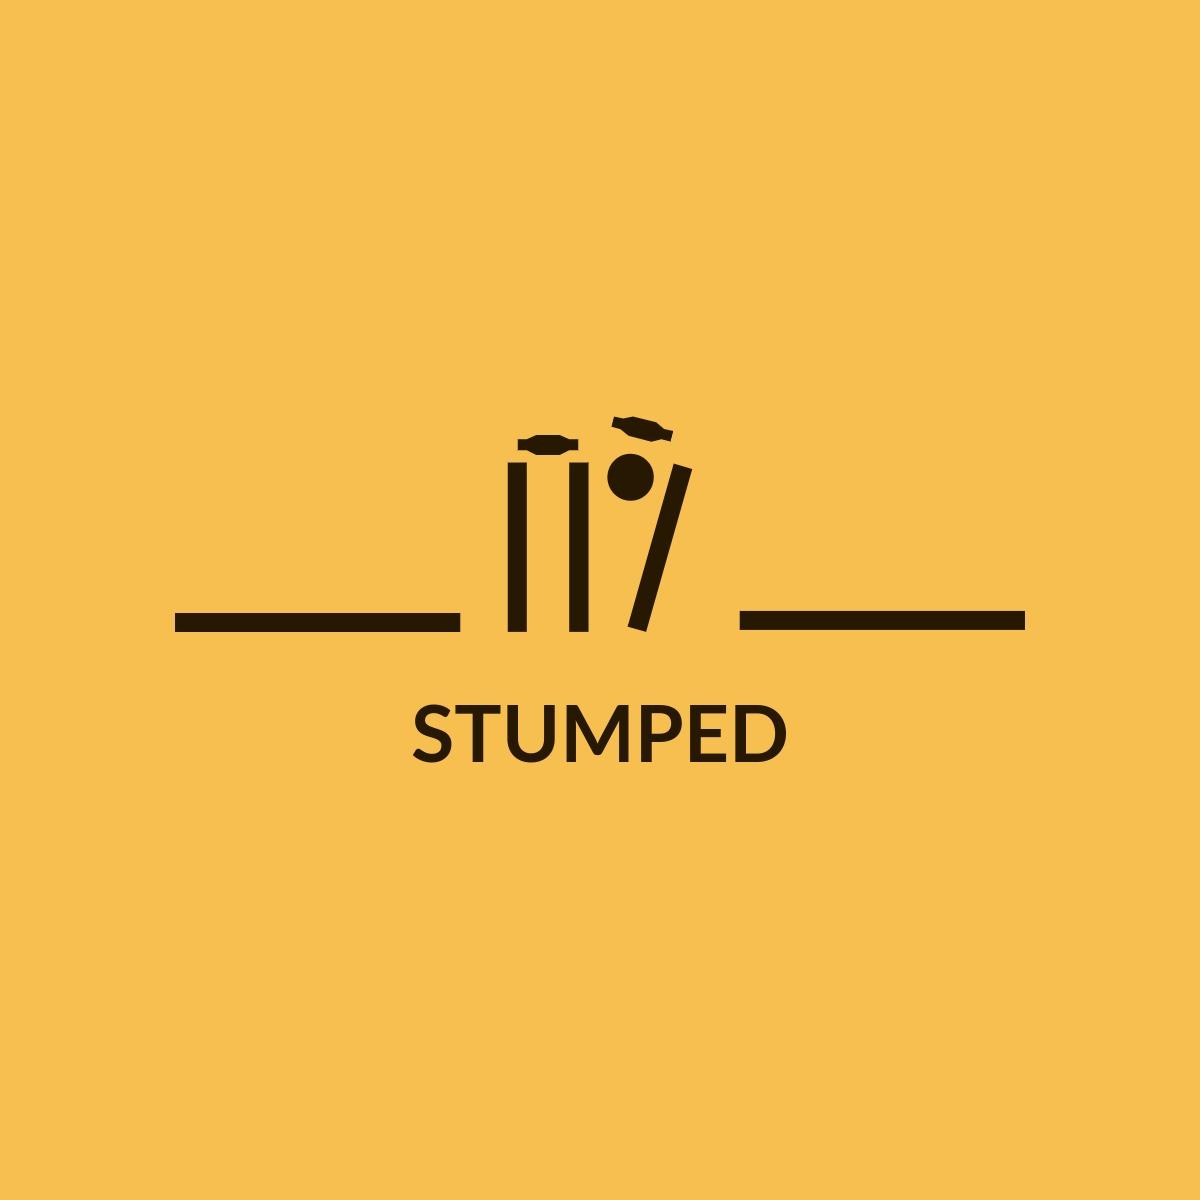 STUMPED